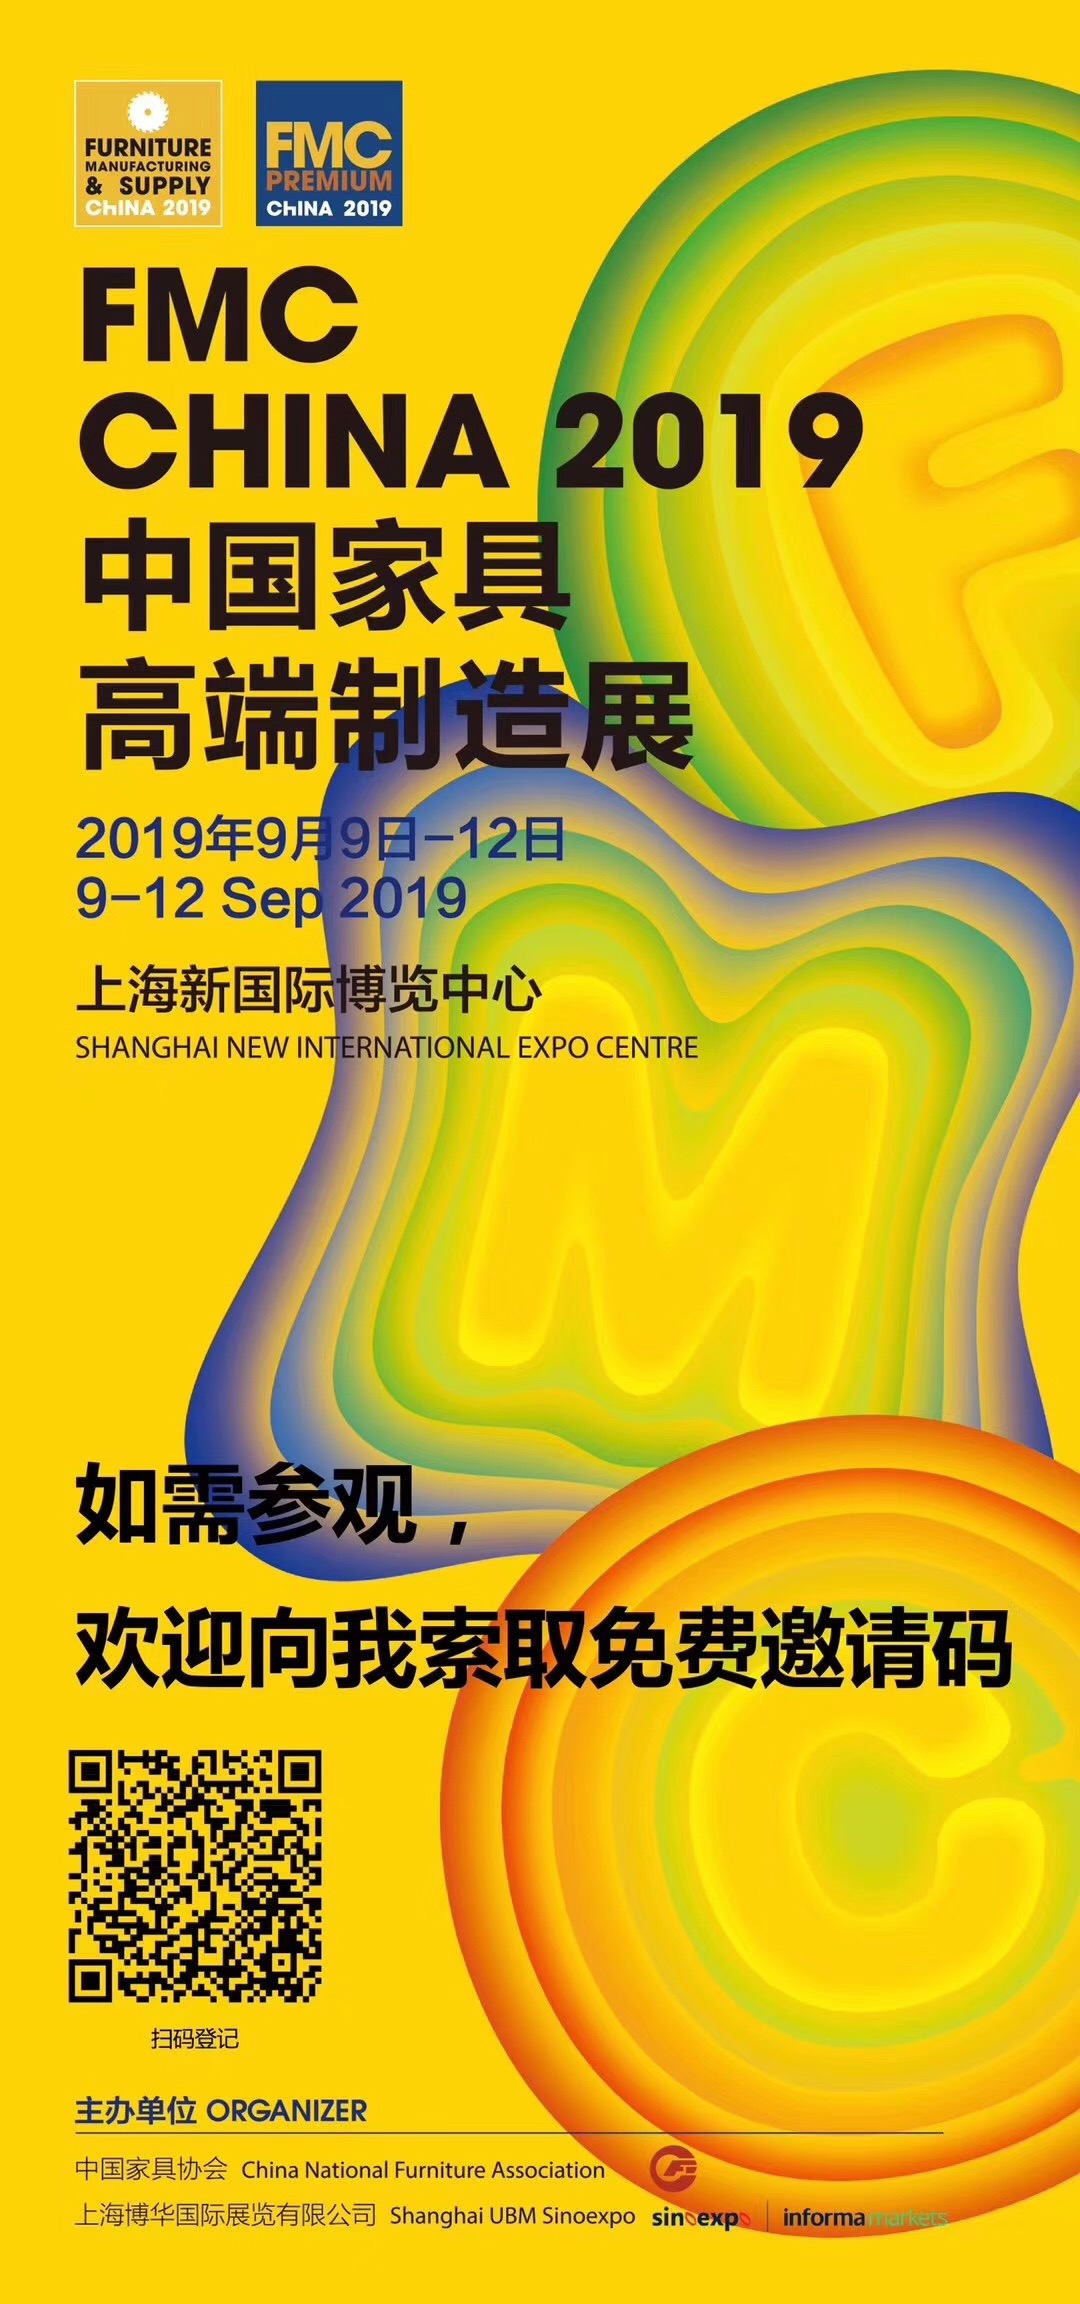 FMC CHINA 2019